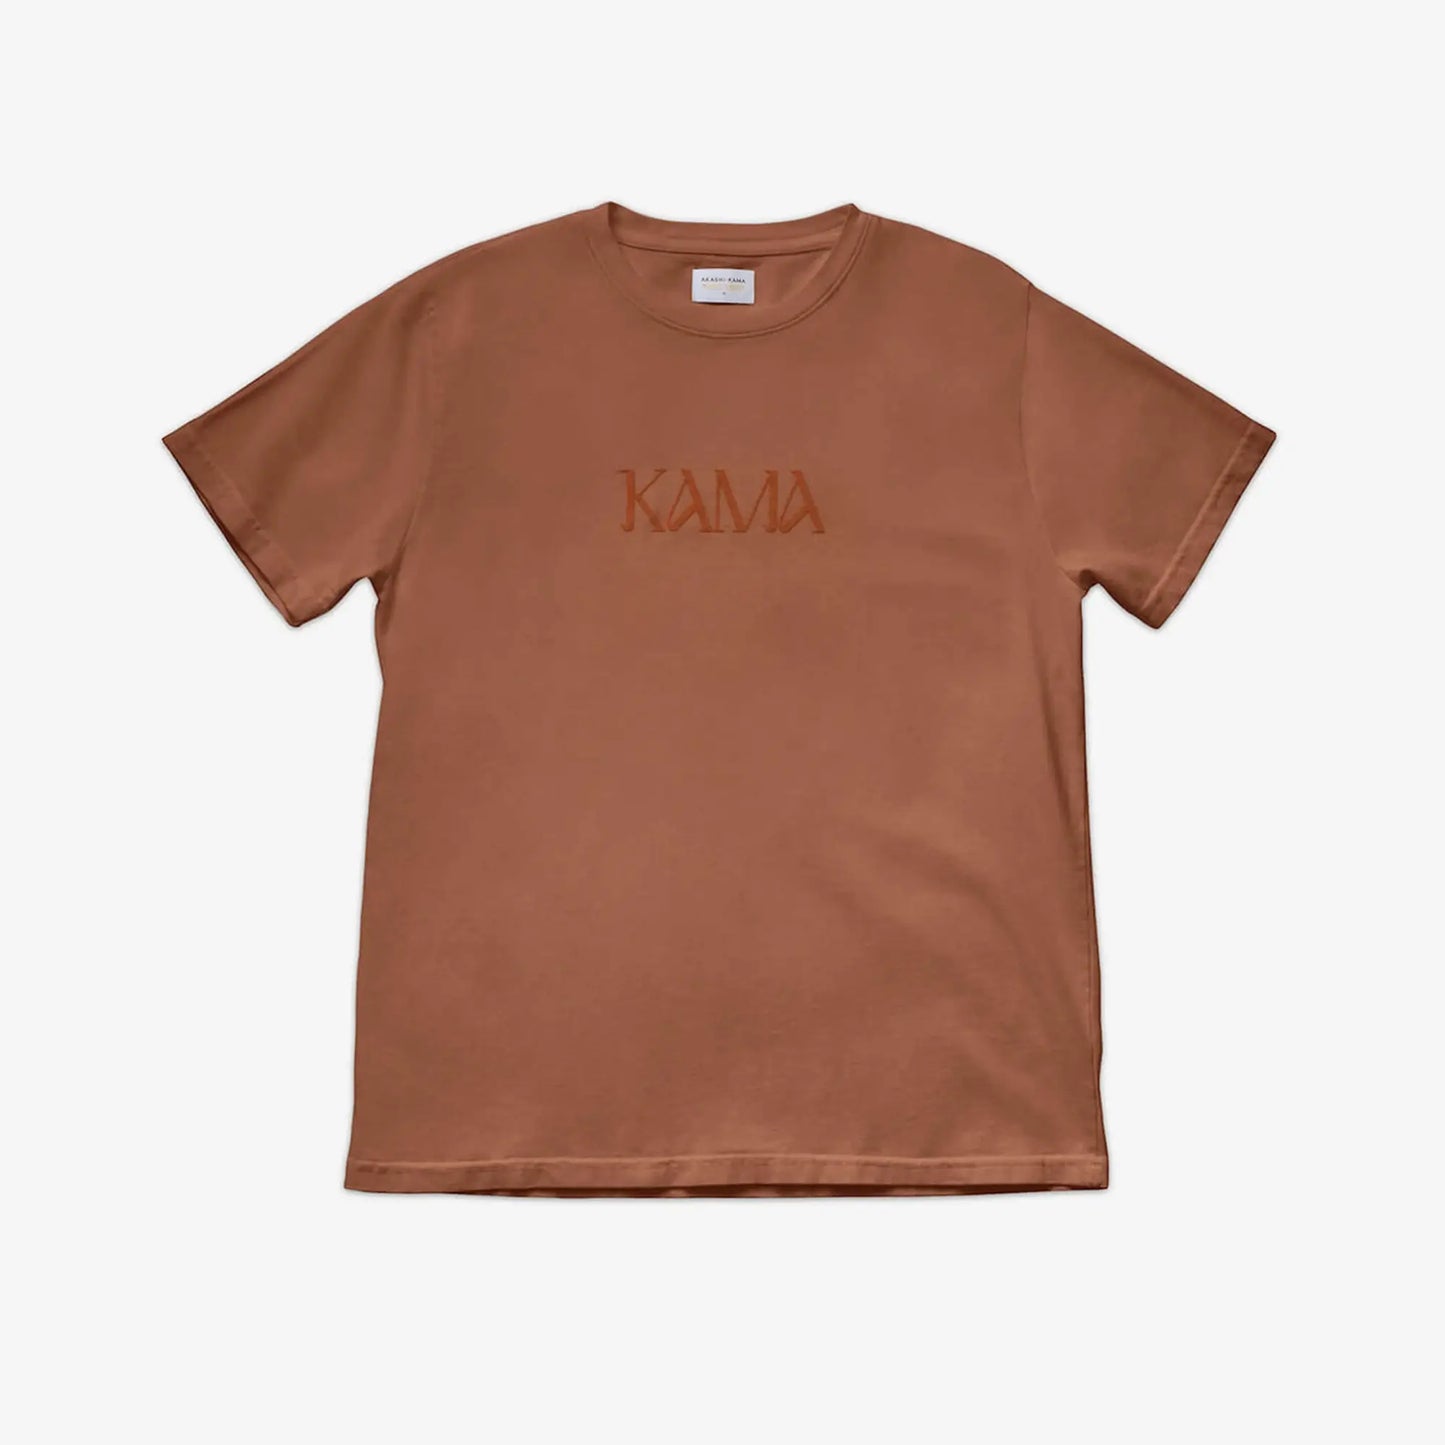 KAMA Flock AKASHI-KAMA Tee in Terracotta | Streetwear Garment Dye Shirt Made in USA